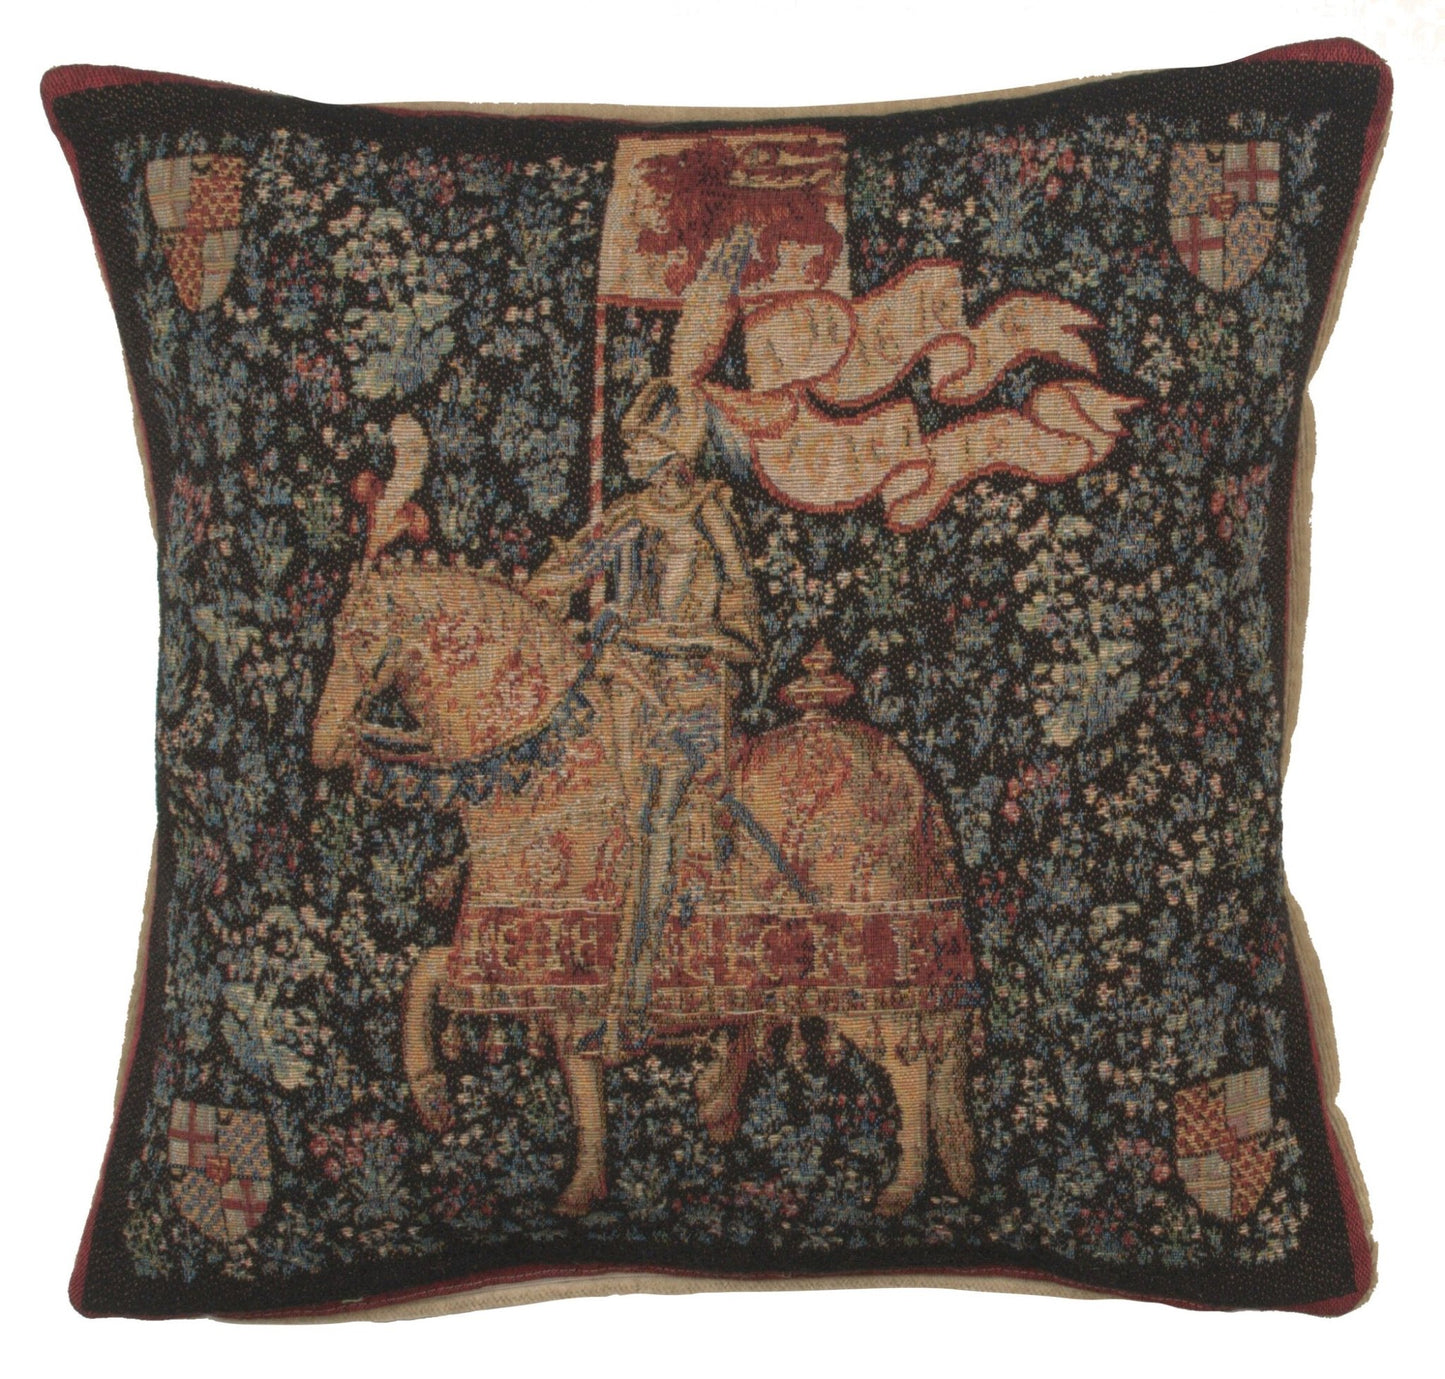 The Knight French Cushion - RoseStraya.com